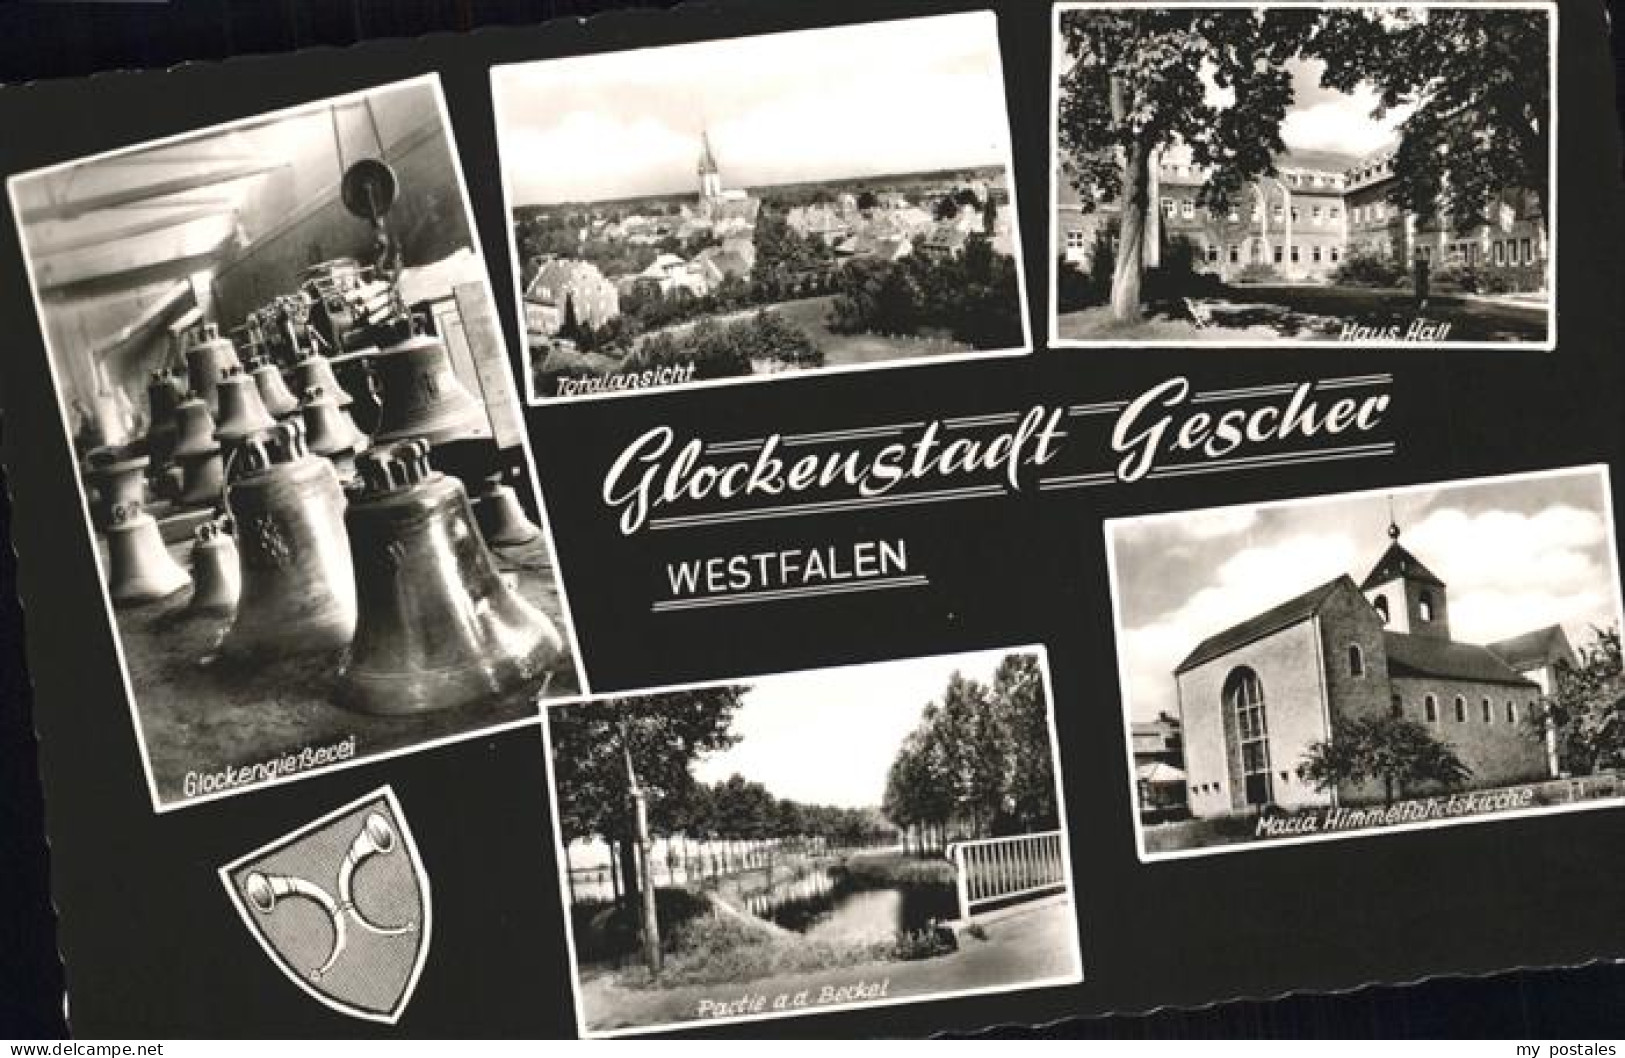 41287596 Gescher Glockenstadt Giesserei Haus Hall  Gescher - Gescher